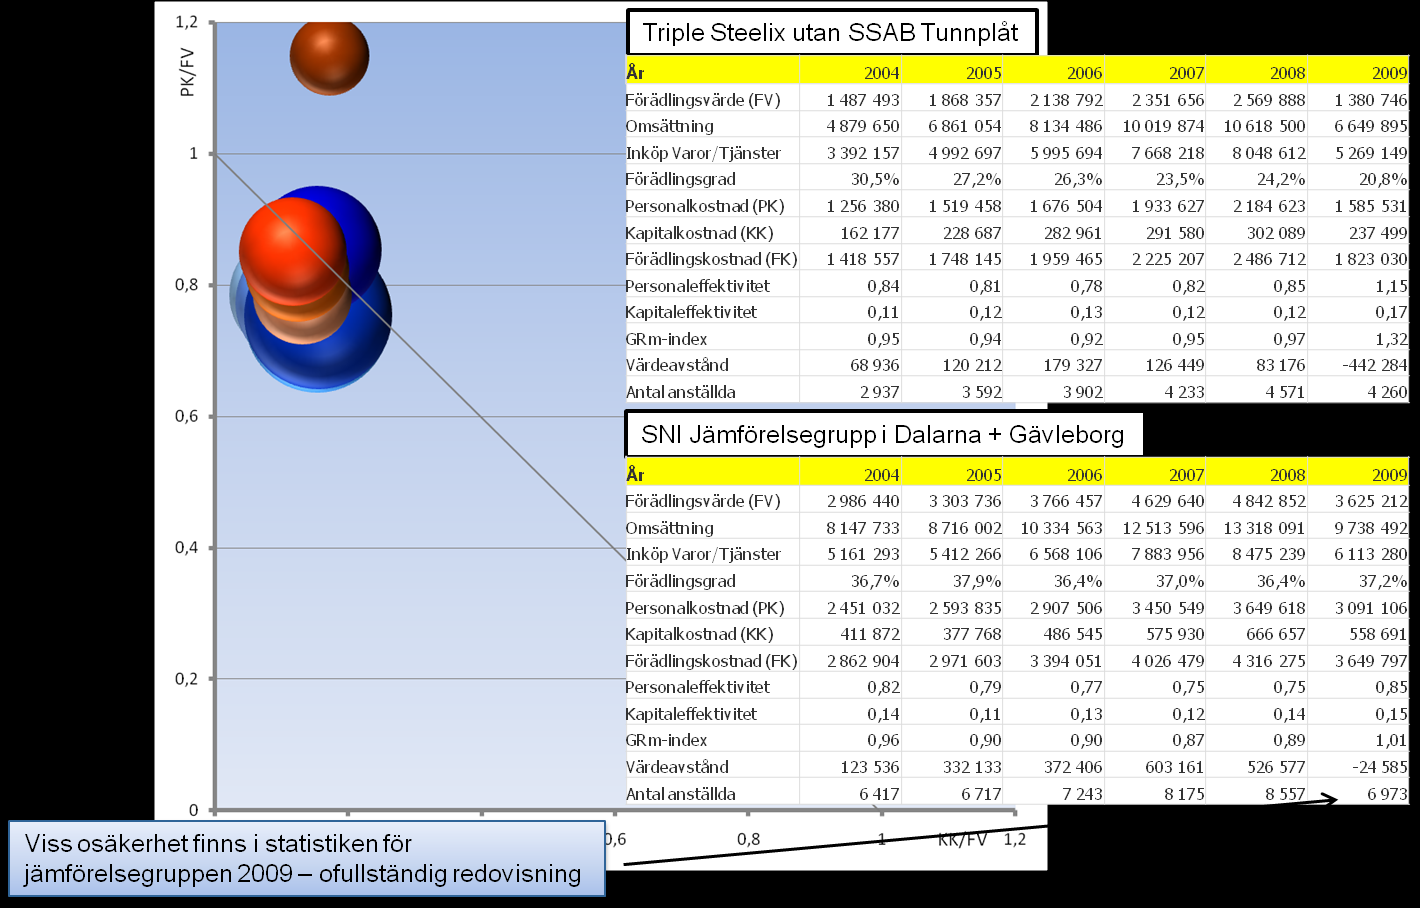 Analyserat resultat för Triple Steelix i stor omfattning beroende av ett enskilt bolag, SSAB Tunnpåt AB, som står för 2/3 av förädlingsvärdet i perioden 2004 2008.